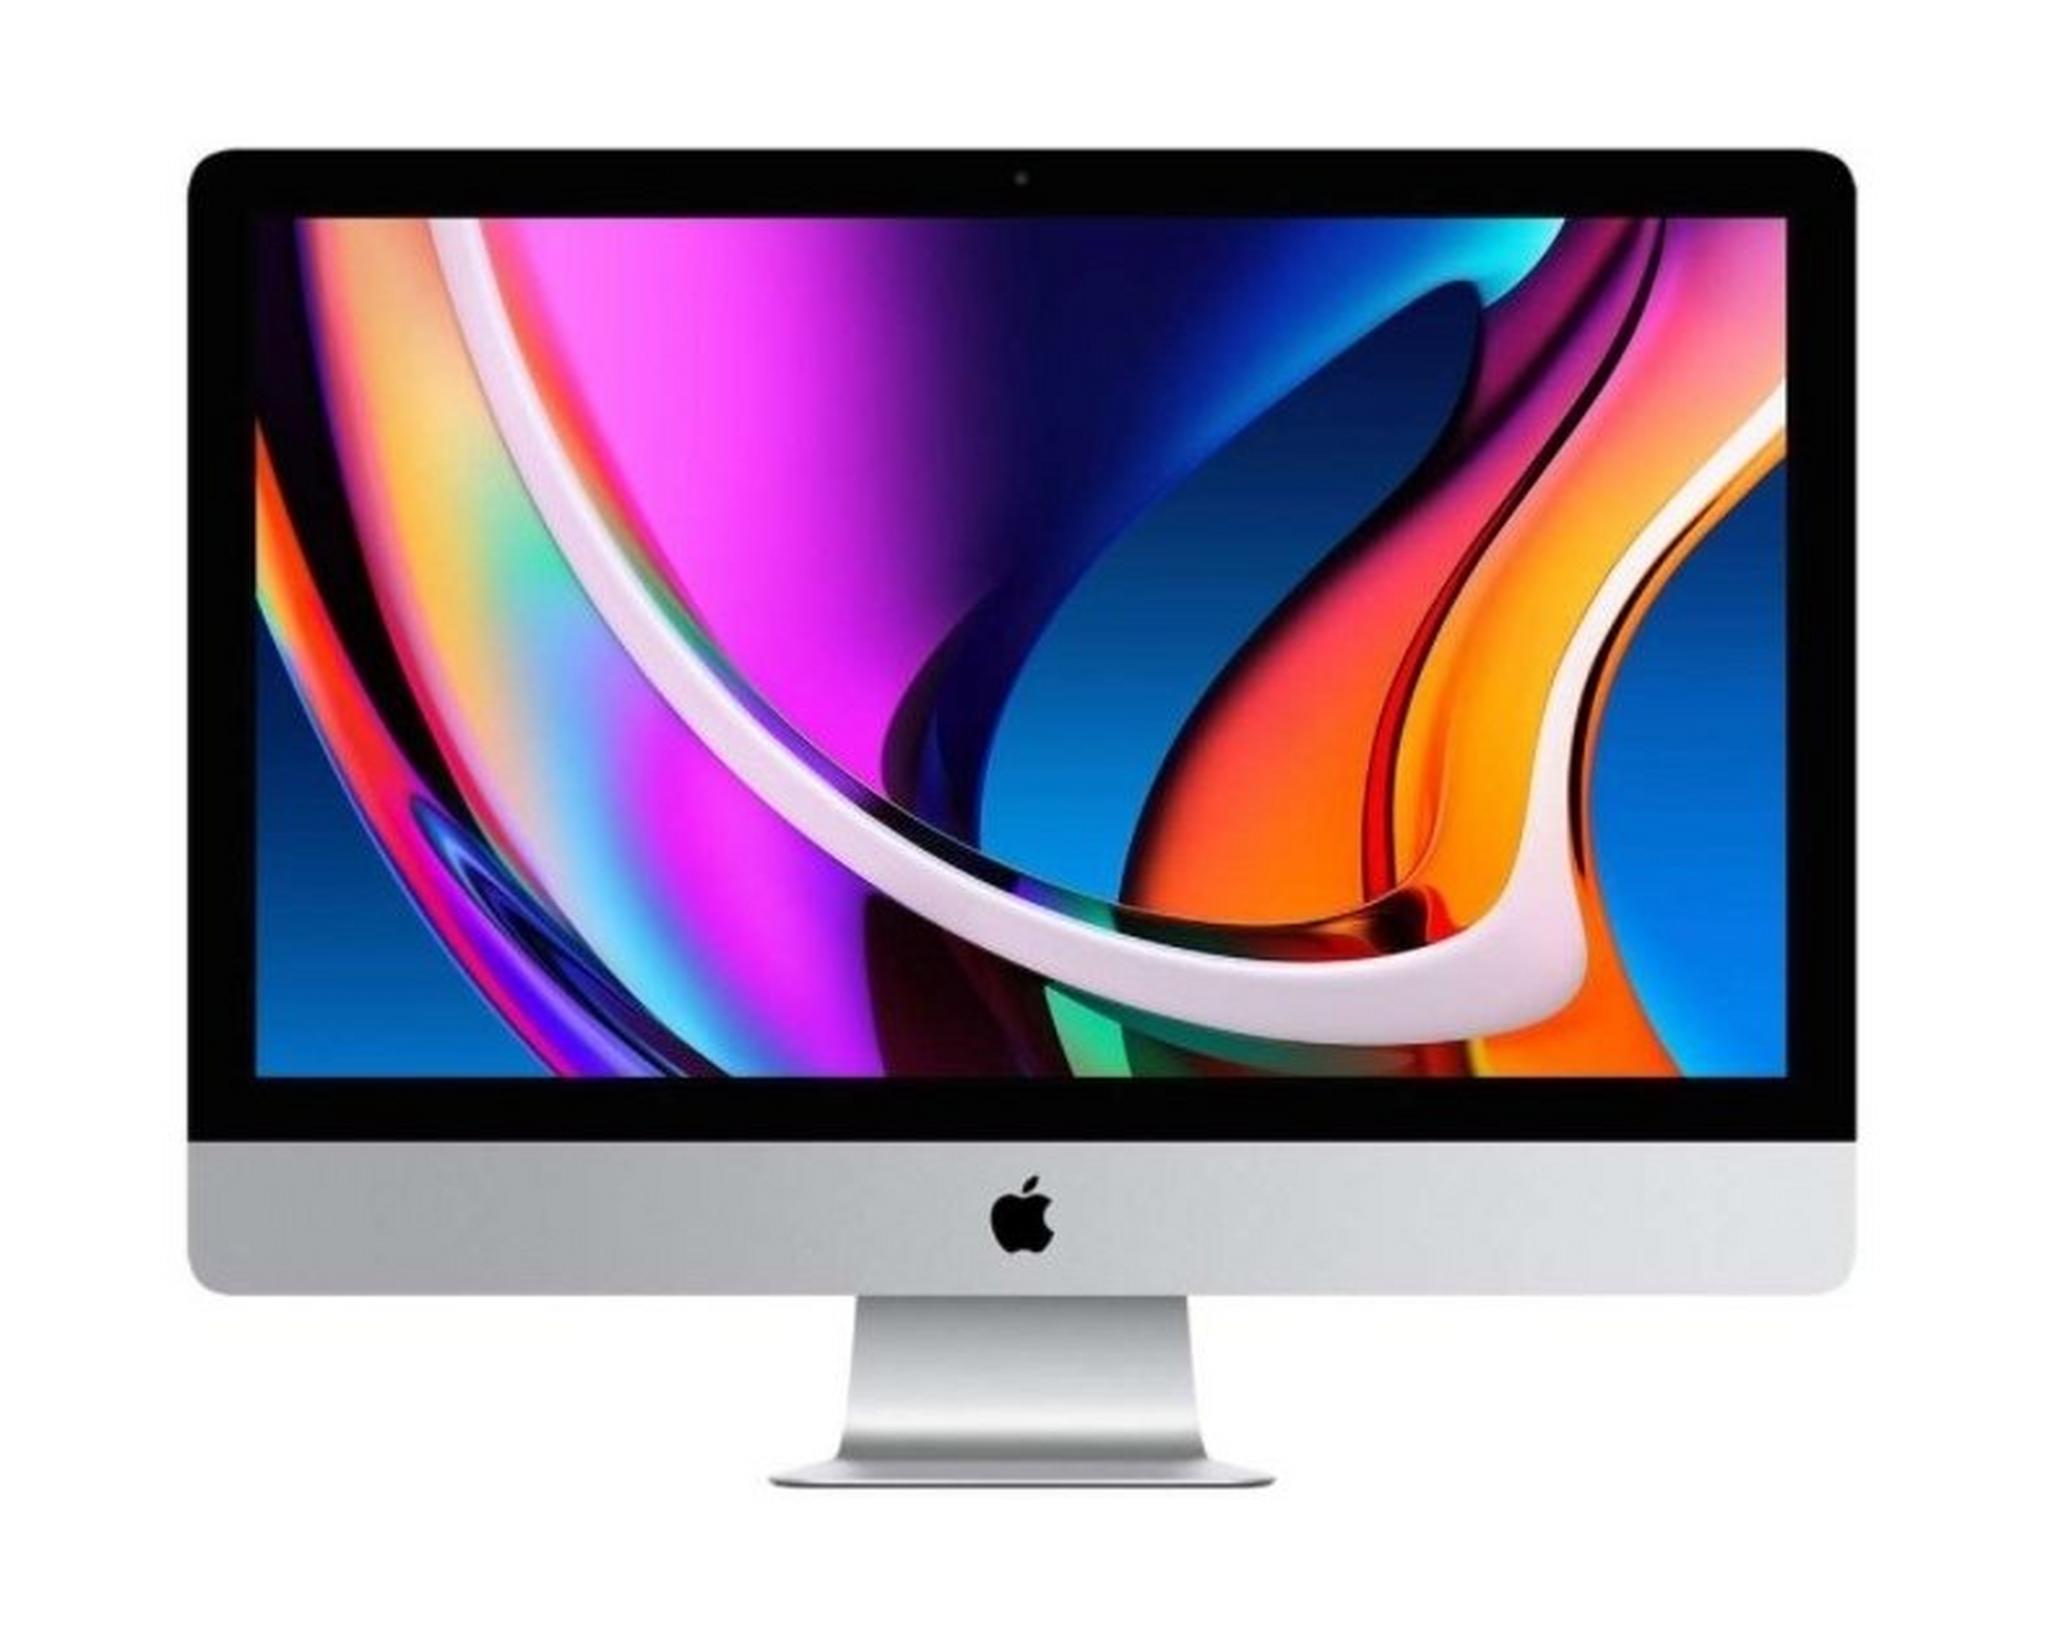 Apple iMac Pro Intel Xeon W 10th Gen. 32GB RAM 1TB SSD 27" 5K All-In-One Desktop - Silver